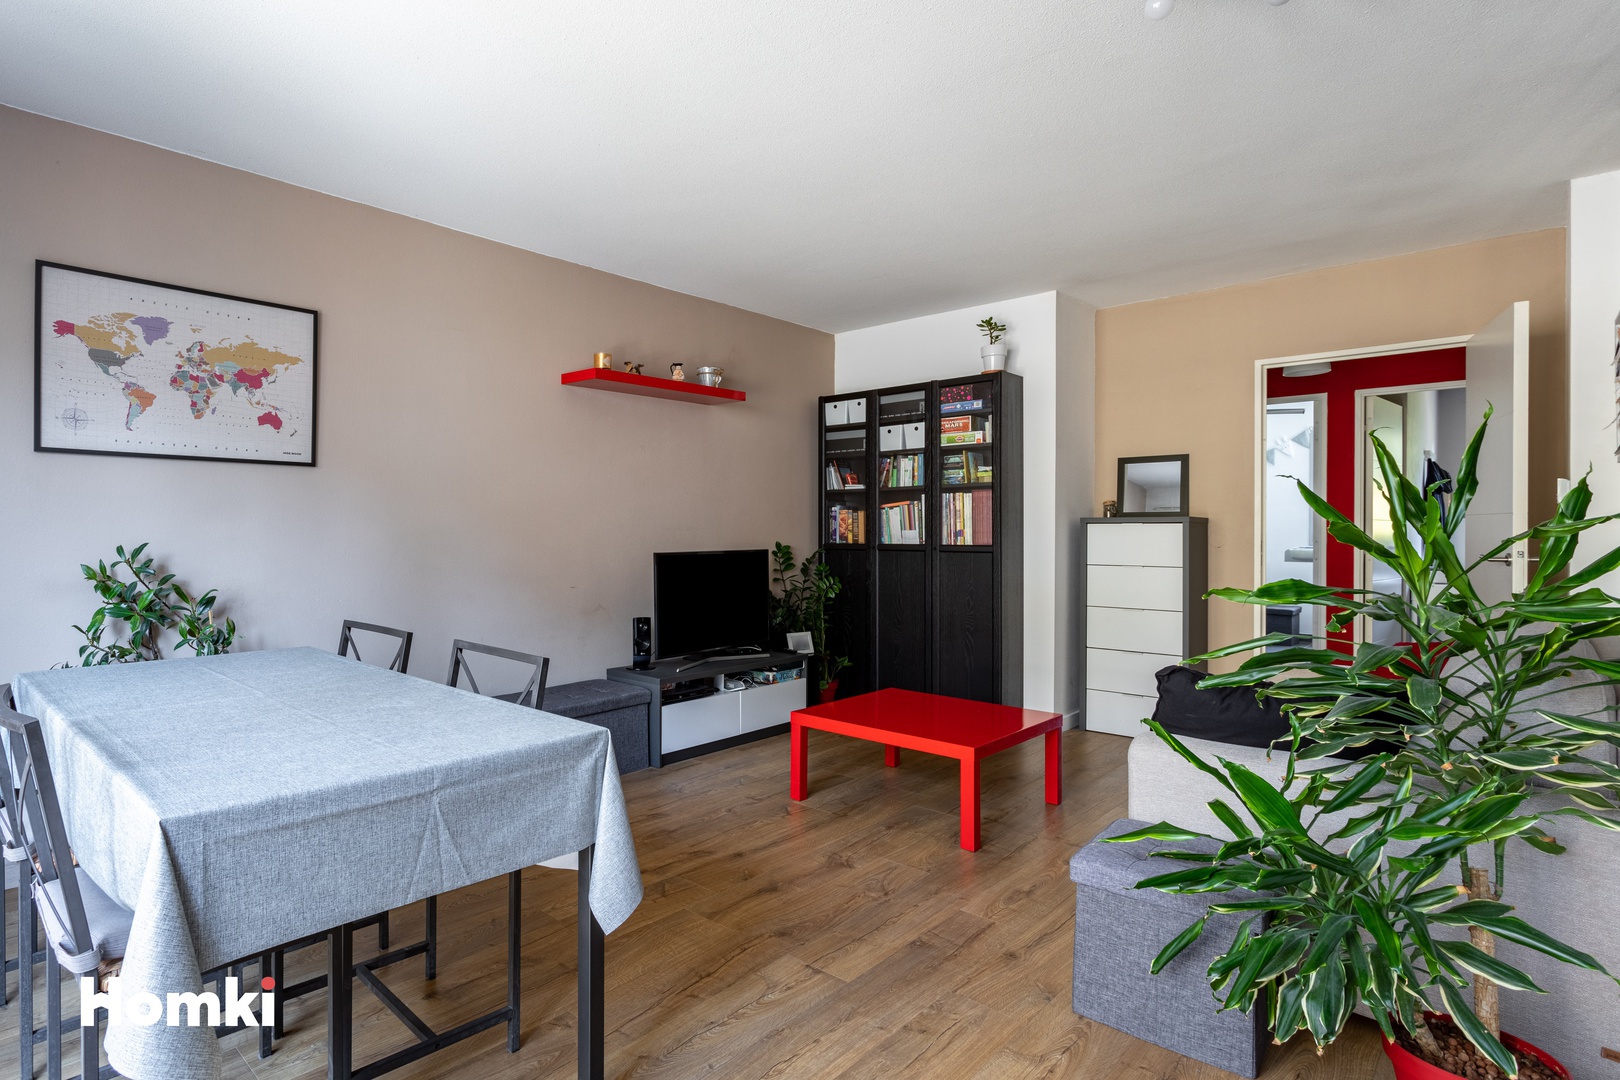 Homki - Vente Appartement  de 66.0 m² à Villeneuve-Loubet 06270